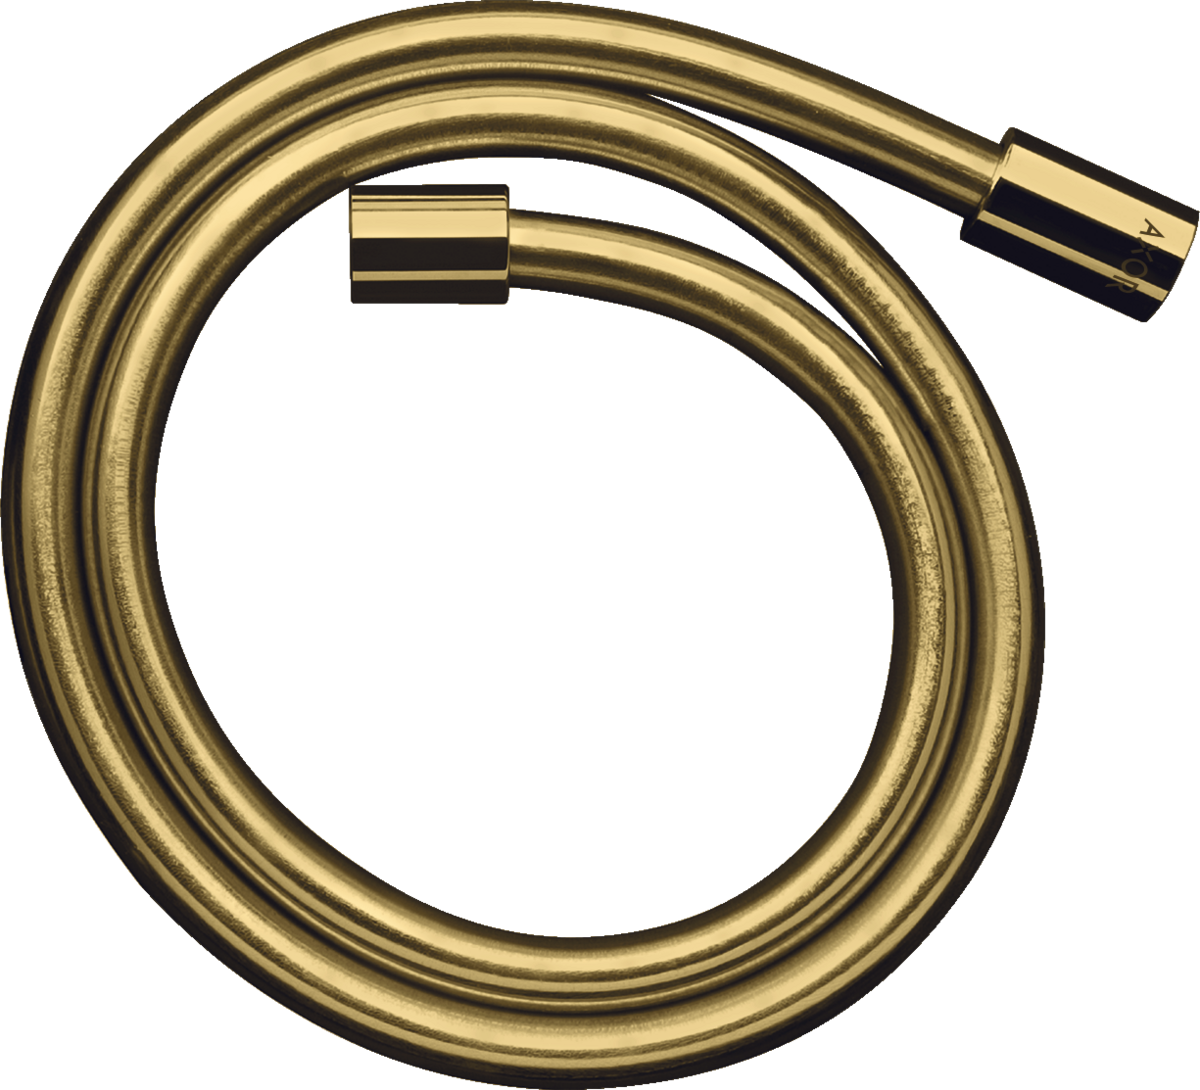 Obrázek HANSGROHE AXOR Starck sprchová hadice s kovovým efektem 1,25 m s válcovými matkami #28282990 - leštěný vzhled zlata